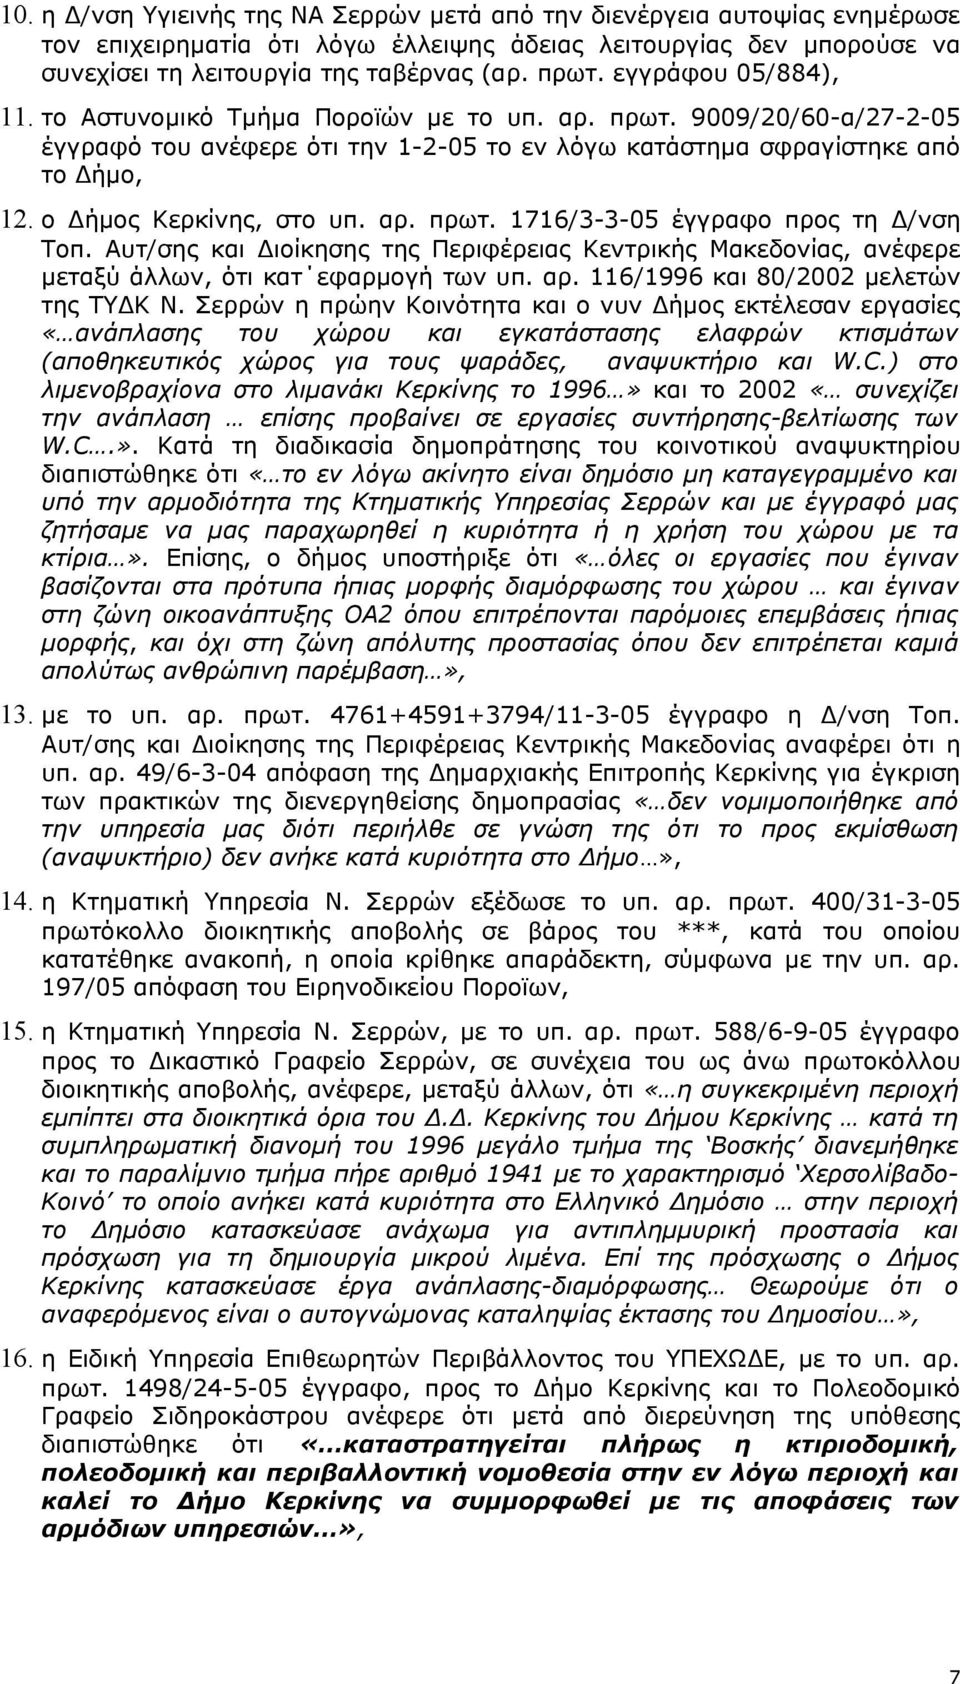 ο Δήμος Κερκίνης, στο υπ. αρ. πρωτ. 1716/3-3-05 έγγραφο προς τη Δ/νση Τοπ. Αυτ/σης και Διοίκησης της Περιφέρειας Κεντρικής Μακεδονίας, ανέφερε μεταξύ άλλων, ότι κατ εφαρμογή των υπ. αρ. 116/1996 και 80/2002 μελετών της ΤΥΔΚ Ν.